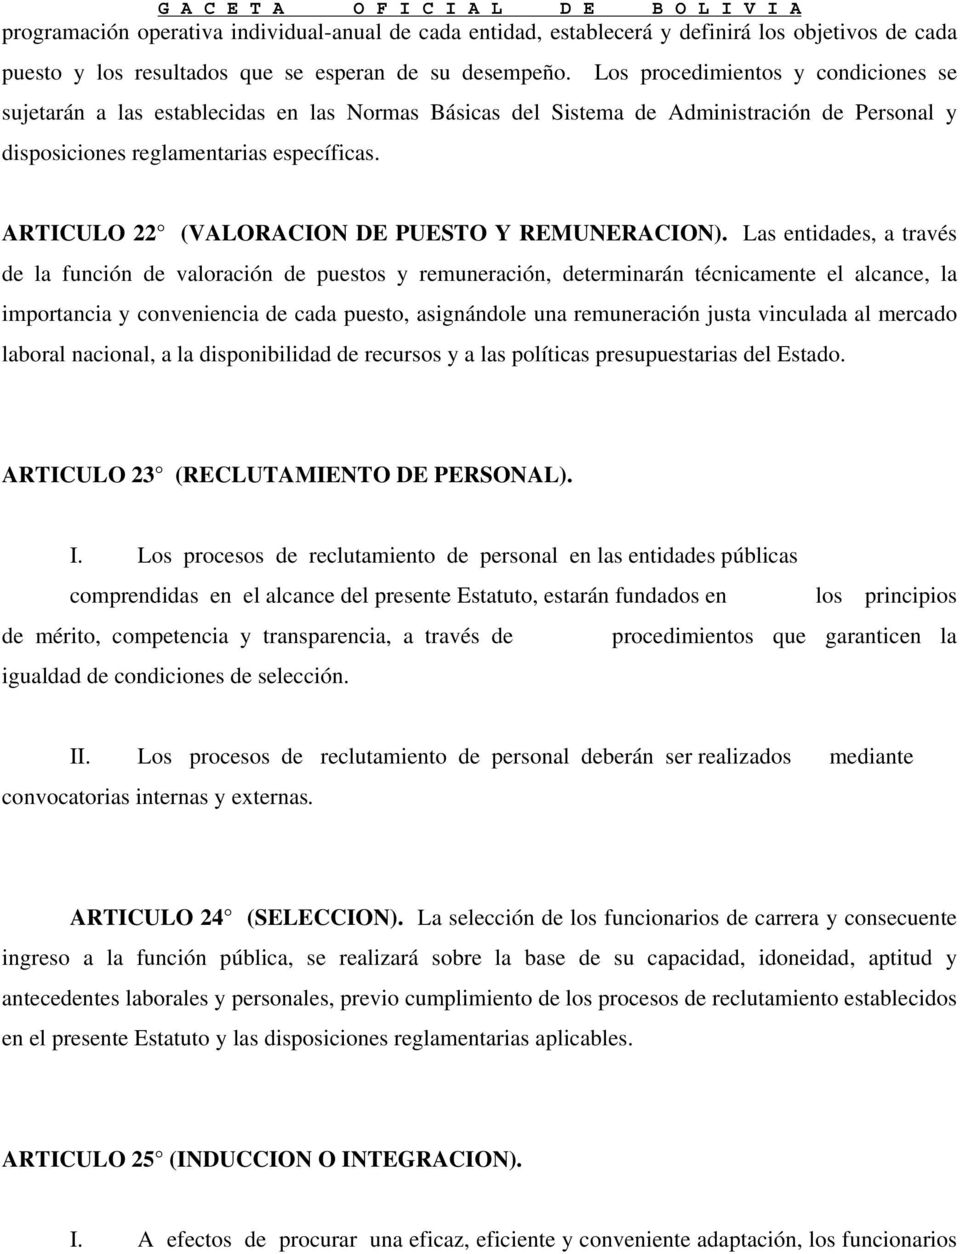 ARTICULO 22 (VALORACION DE PUESTO Y REMUNERACION).